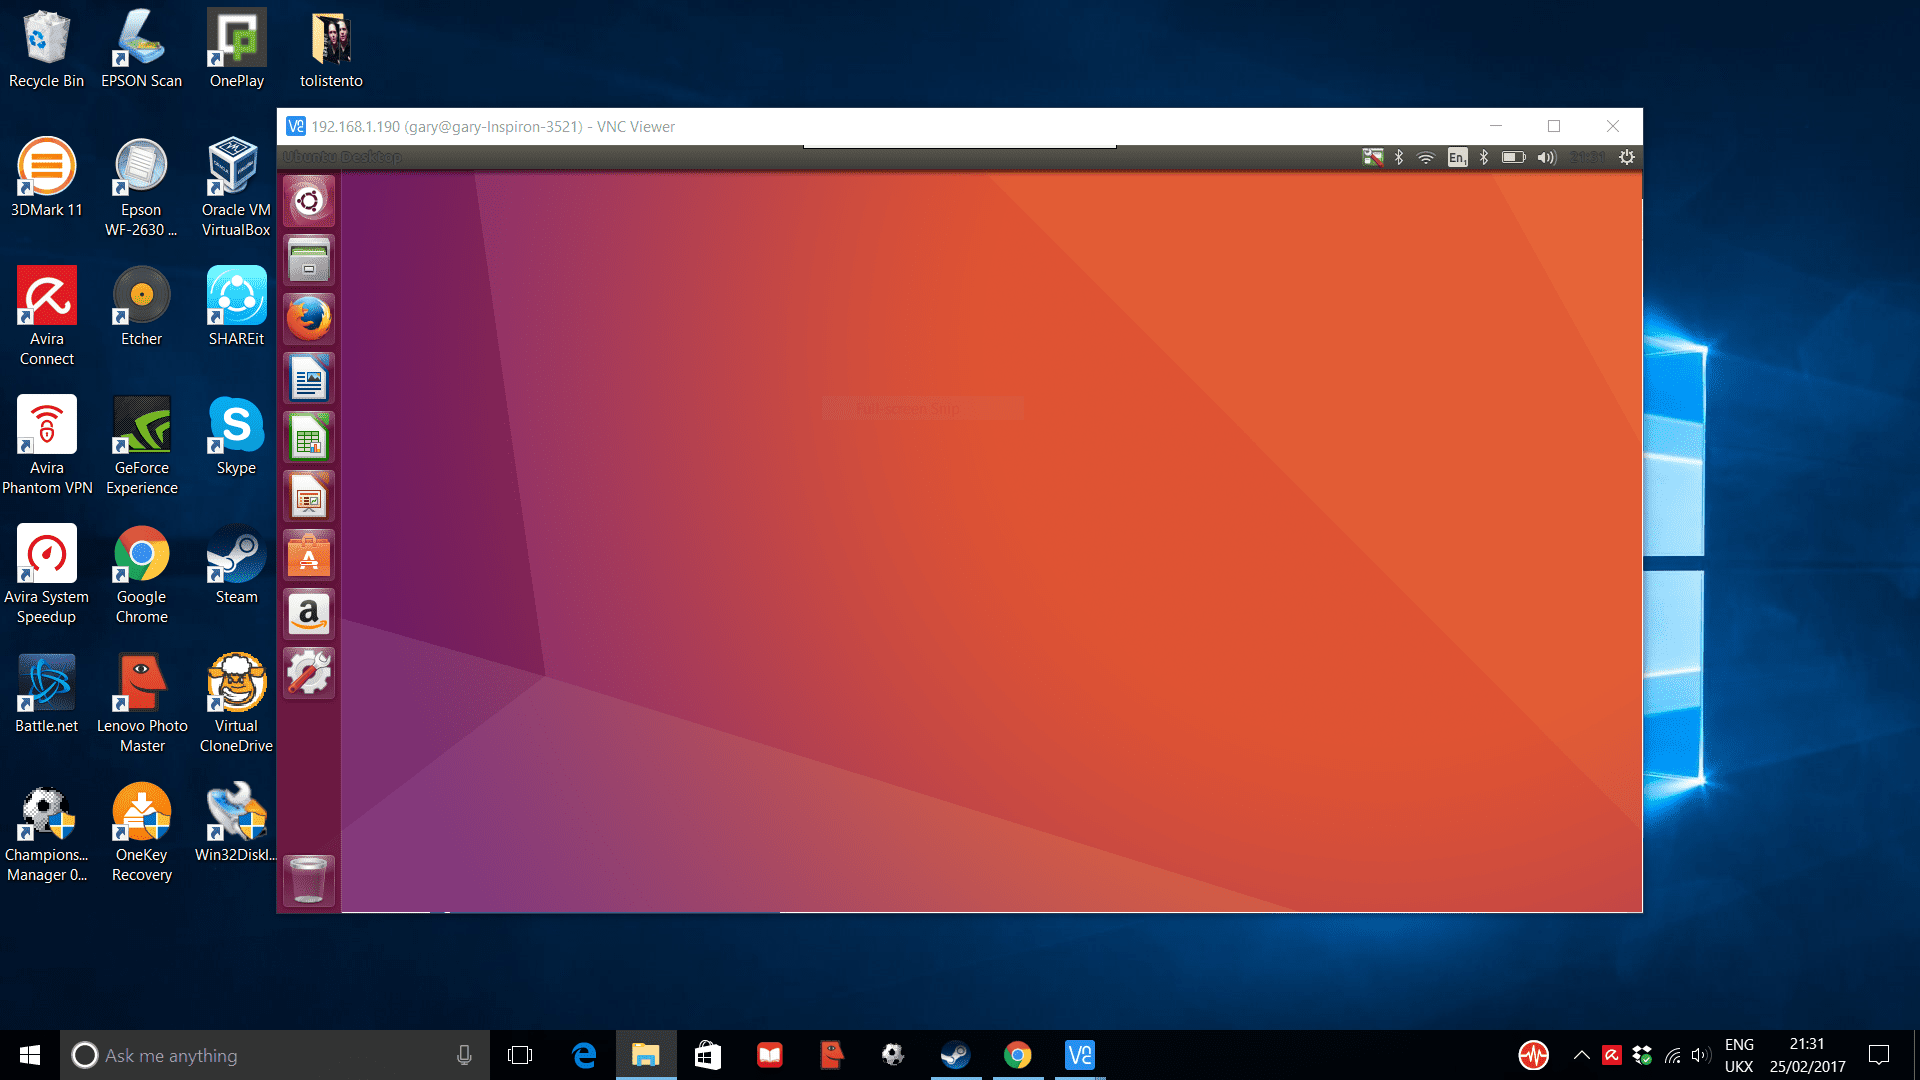 How To Setup A Ubuntu Remote Desktop